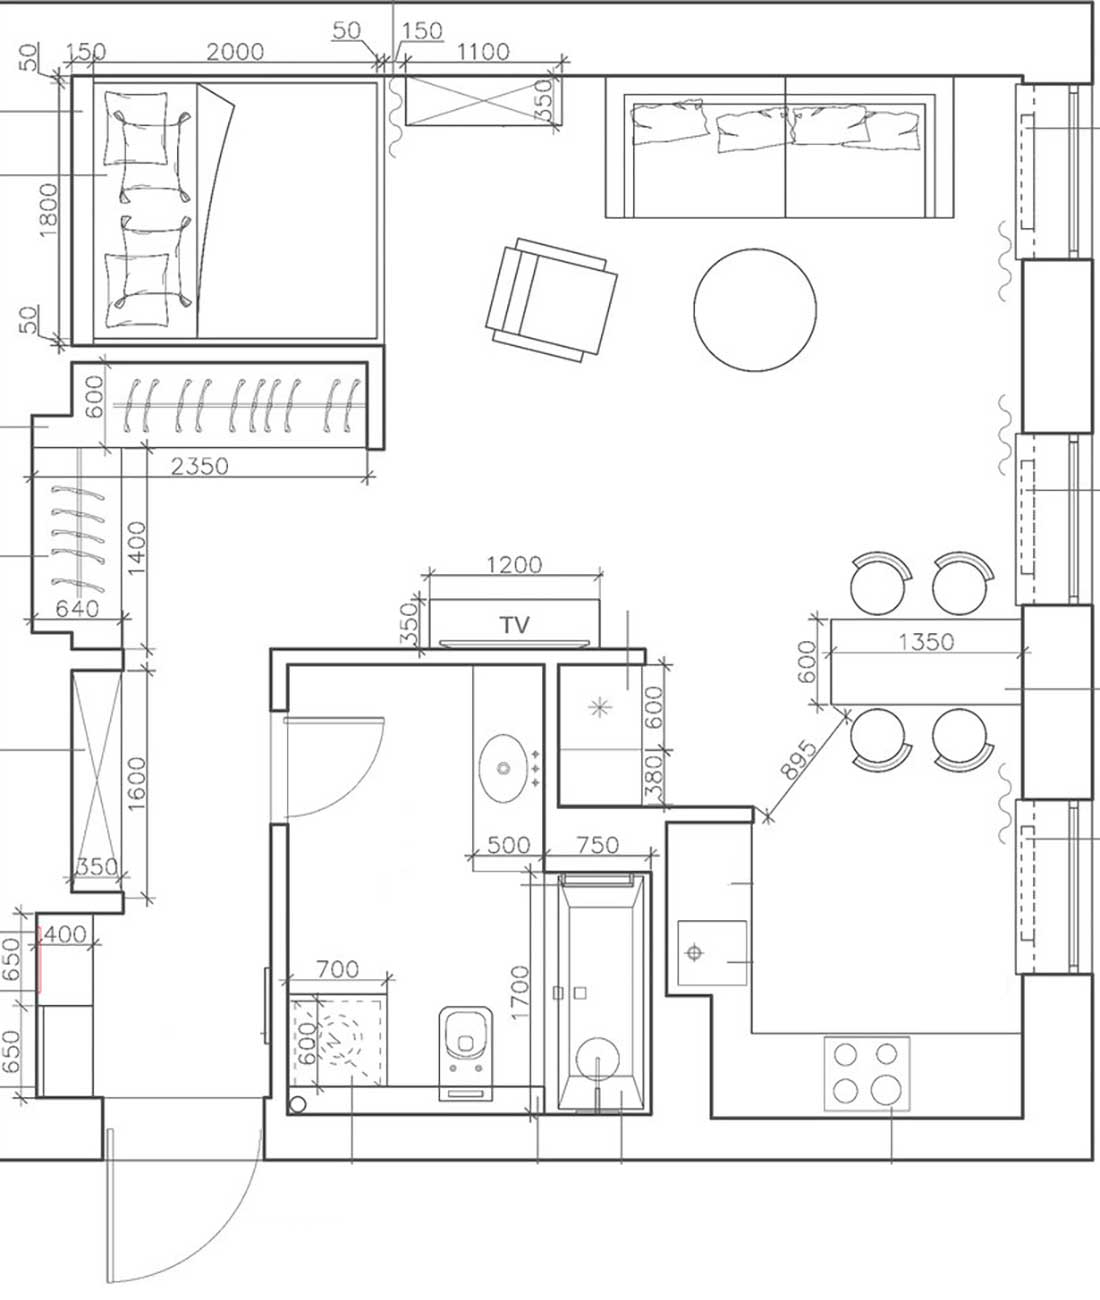 Egyedül élő hölgy kényelmes, 48m2-es otthona, egyszobás lakás elegáns, letisztult lakberendezéssel